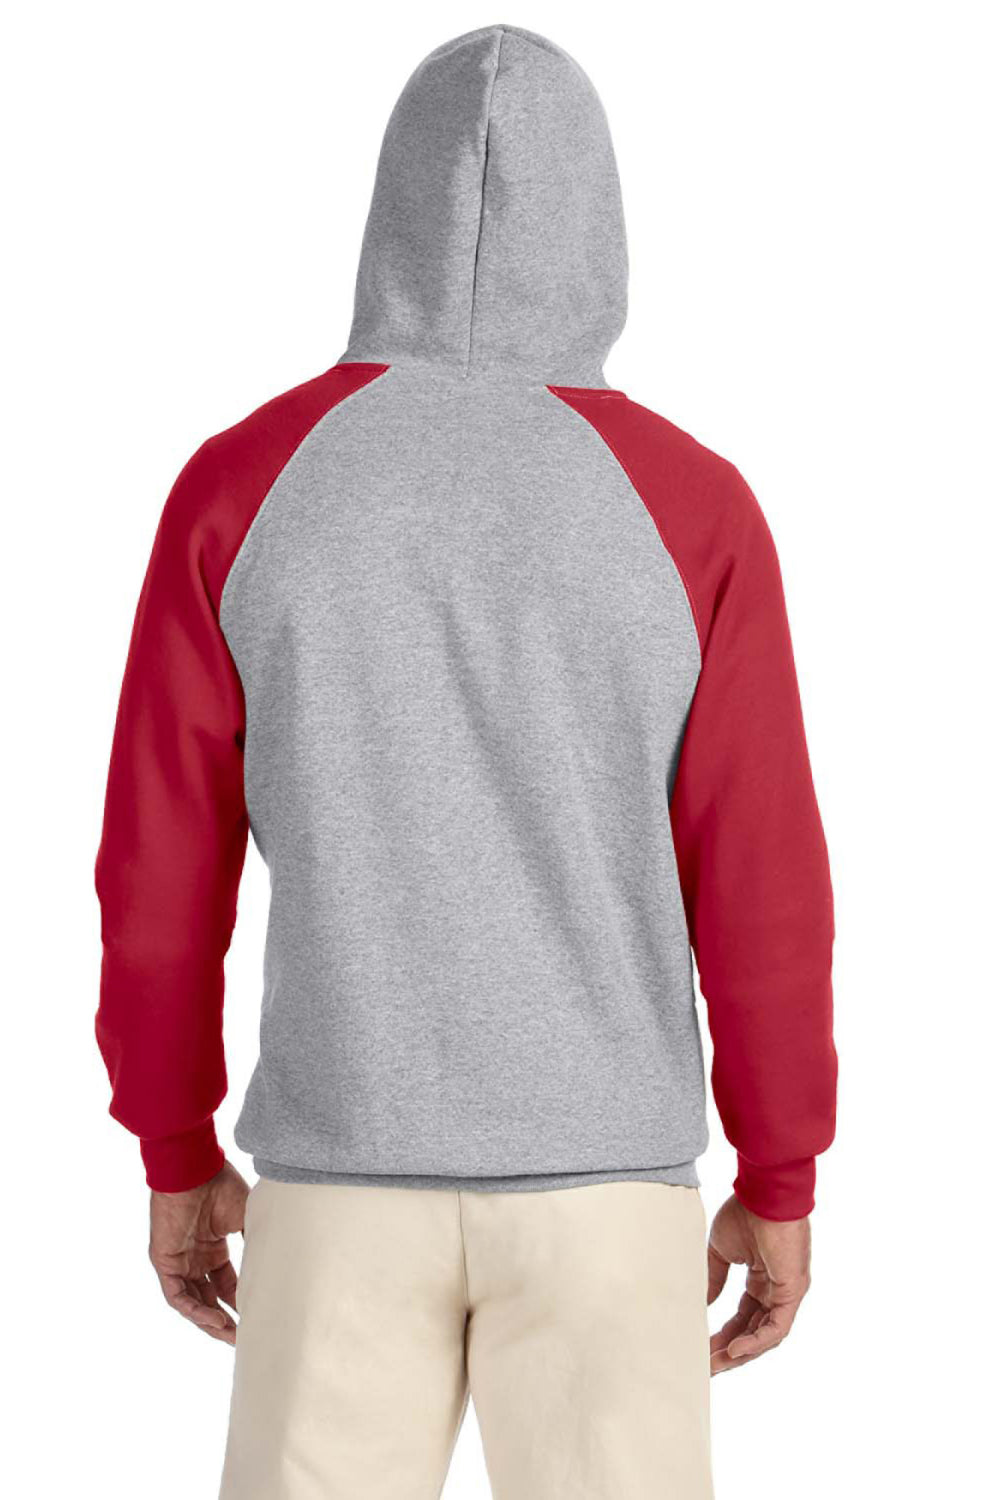 Jerzees 96CR Mens NuBlend Fleece Hooded Sweatshirt Hoodie Oxford Grey/Red Back